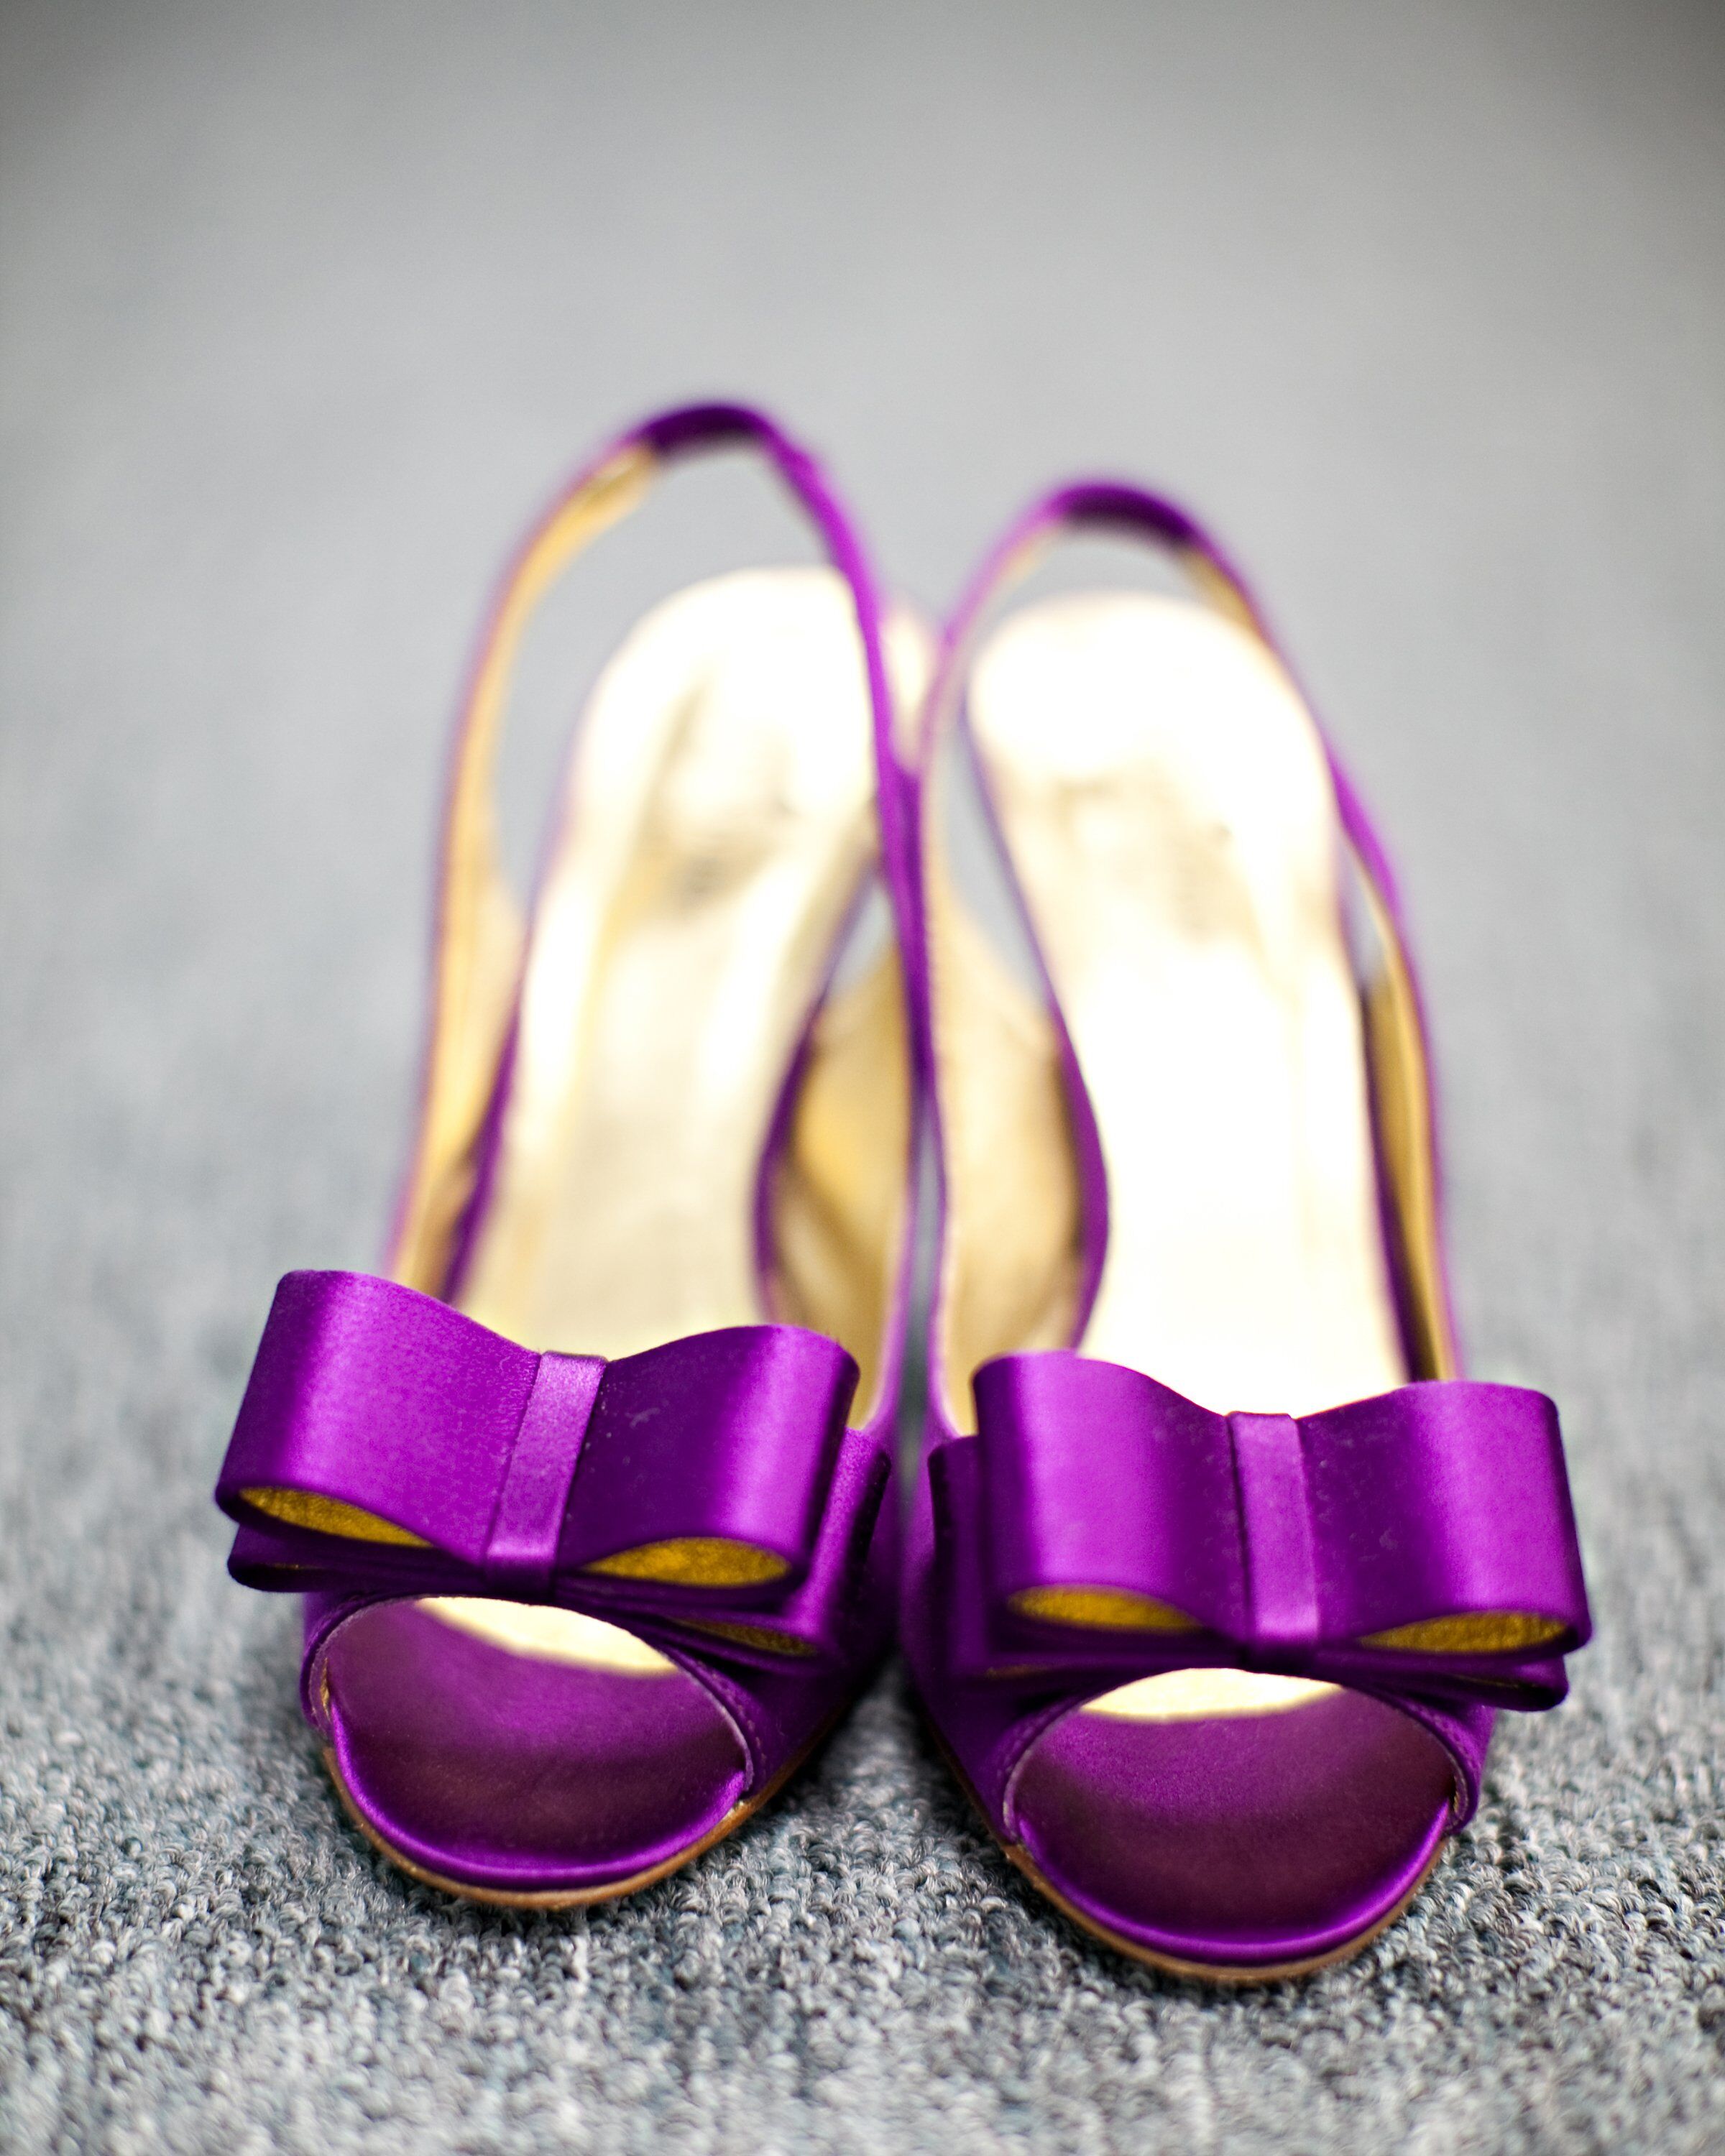 Purple Bridal Shoes